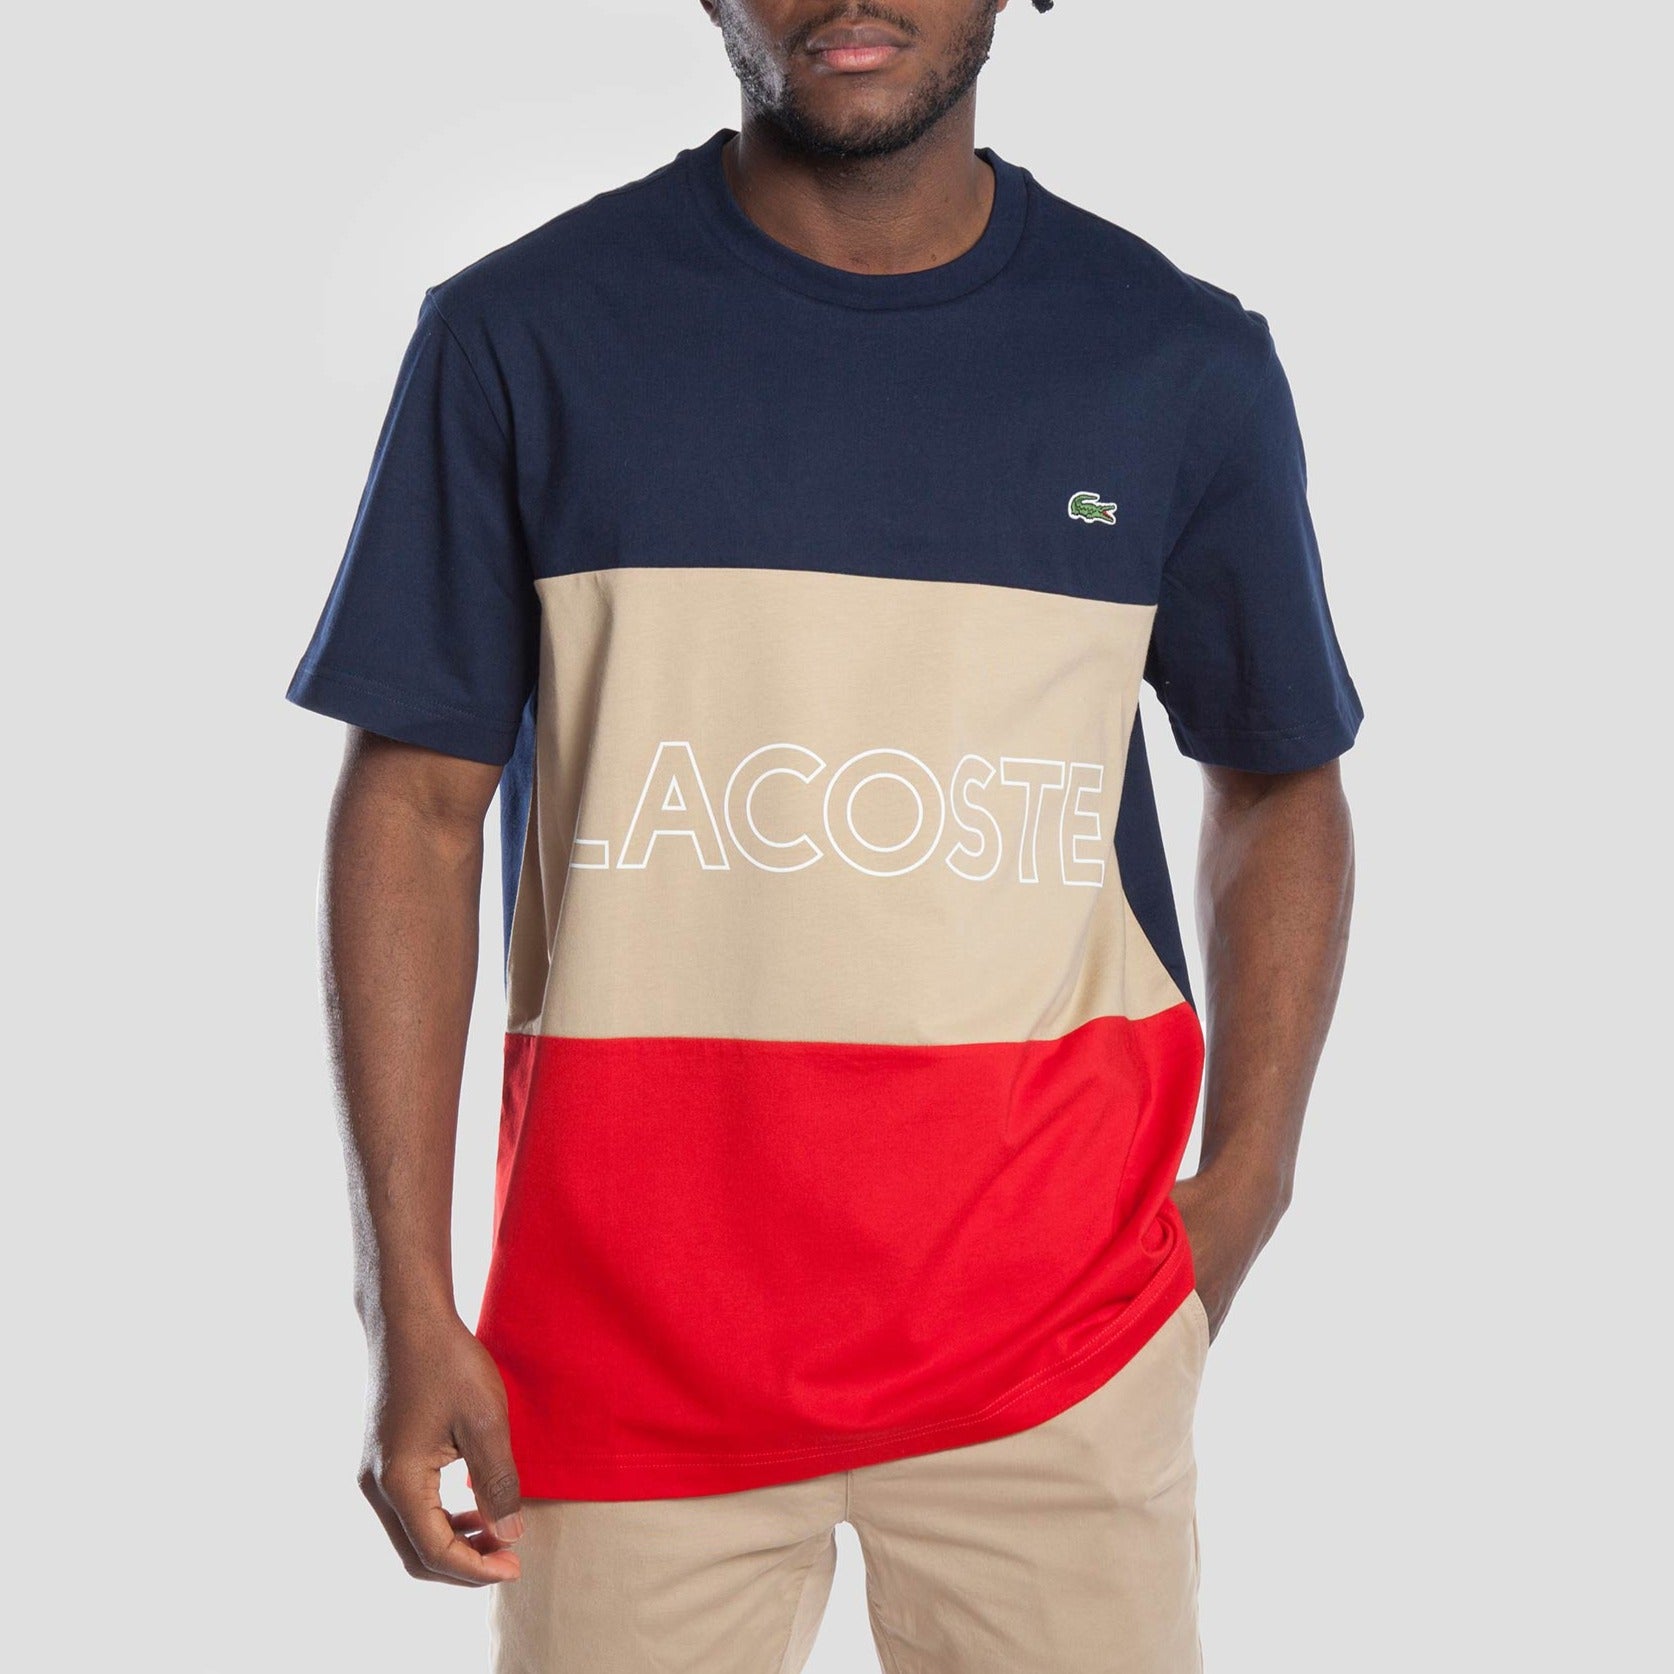 Lacoste L!ve Camiseta - TH7059-1FE - Colección Chico